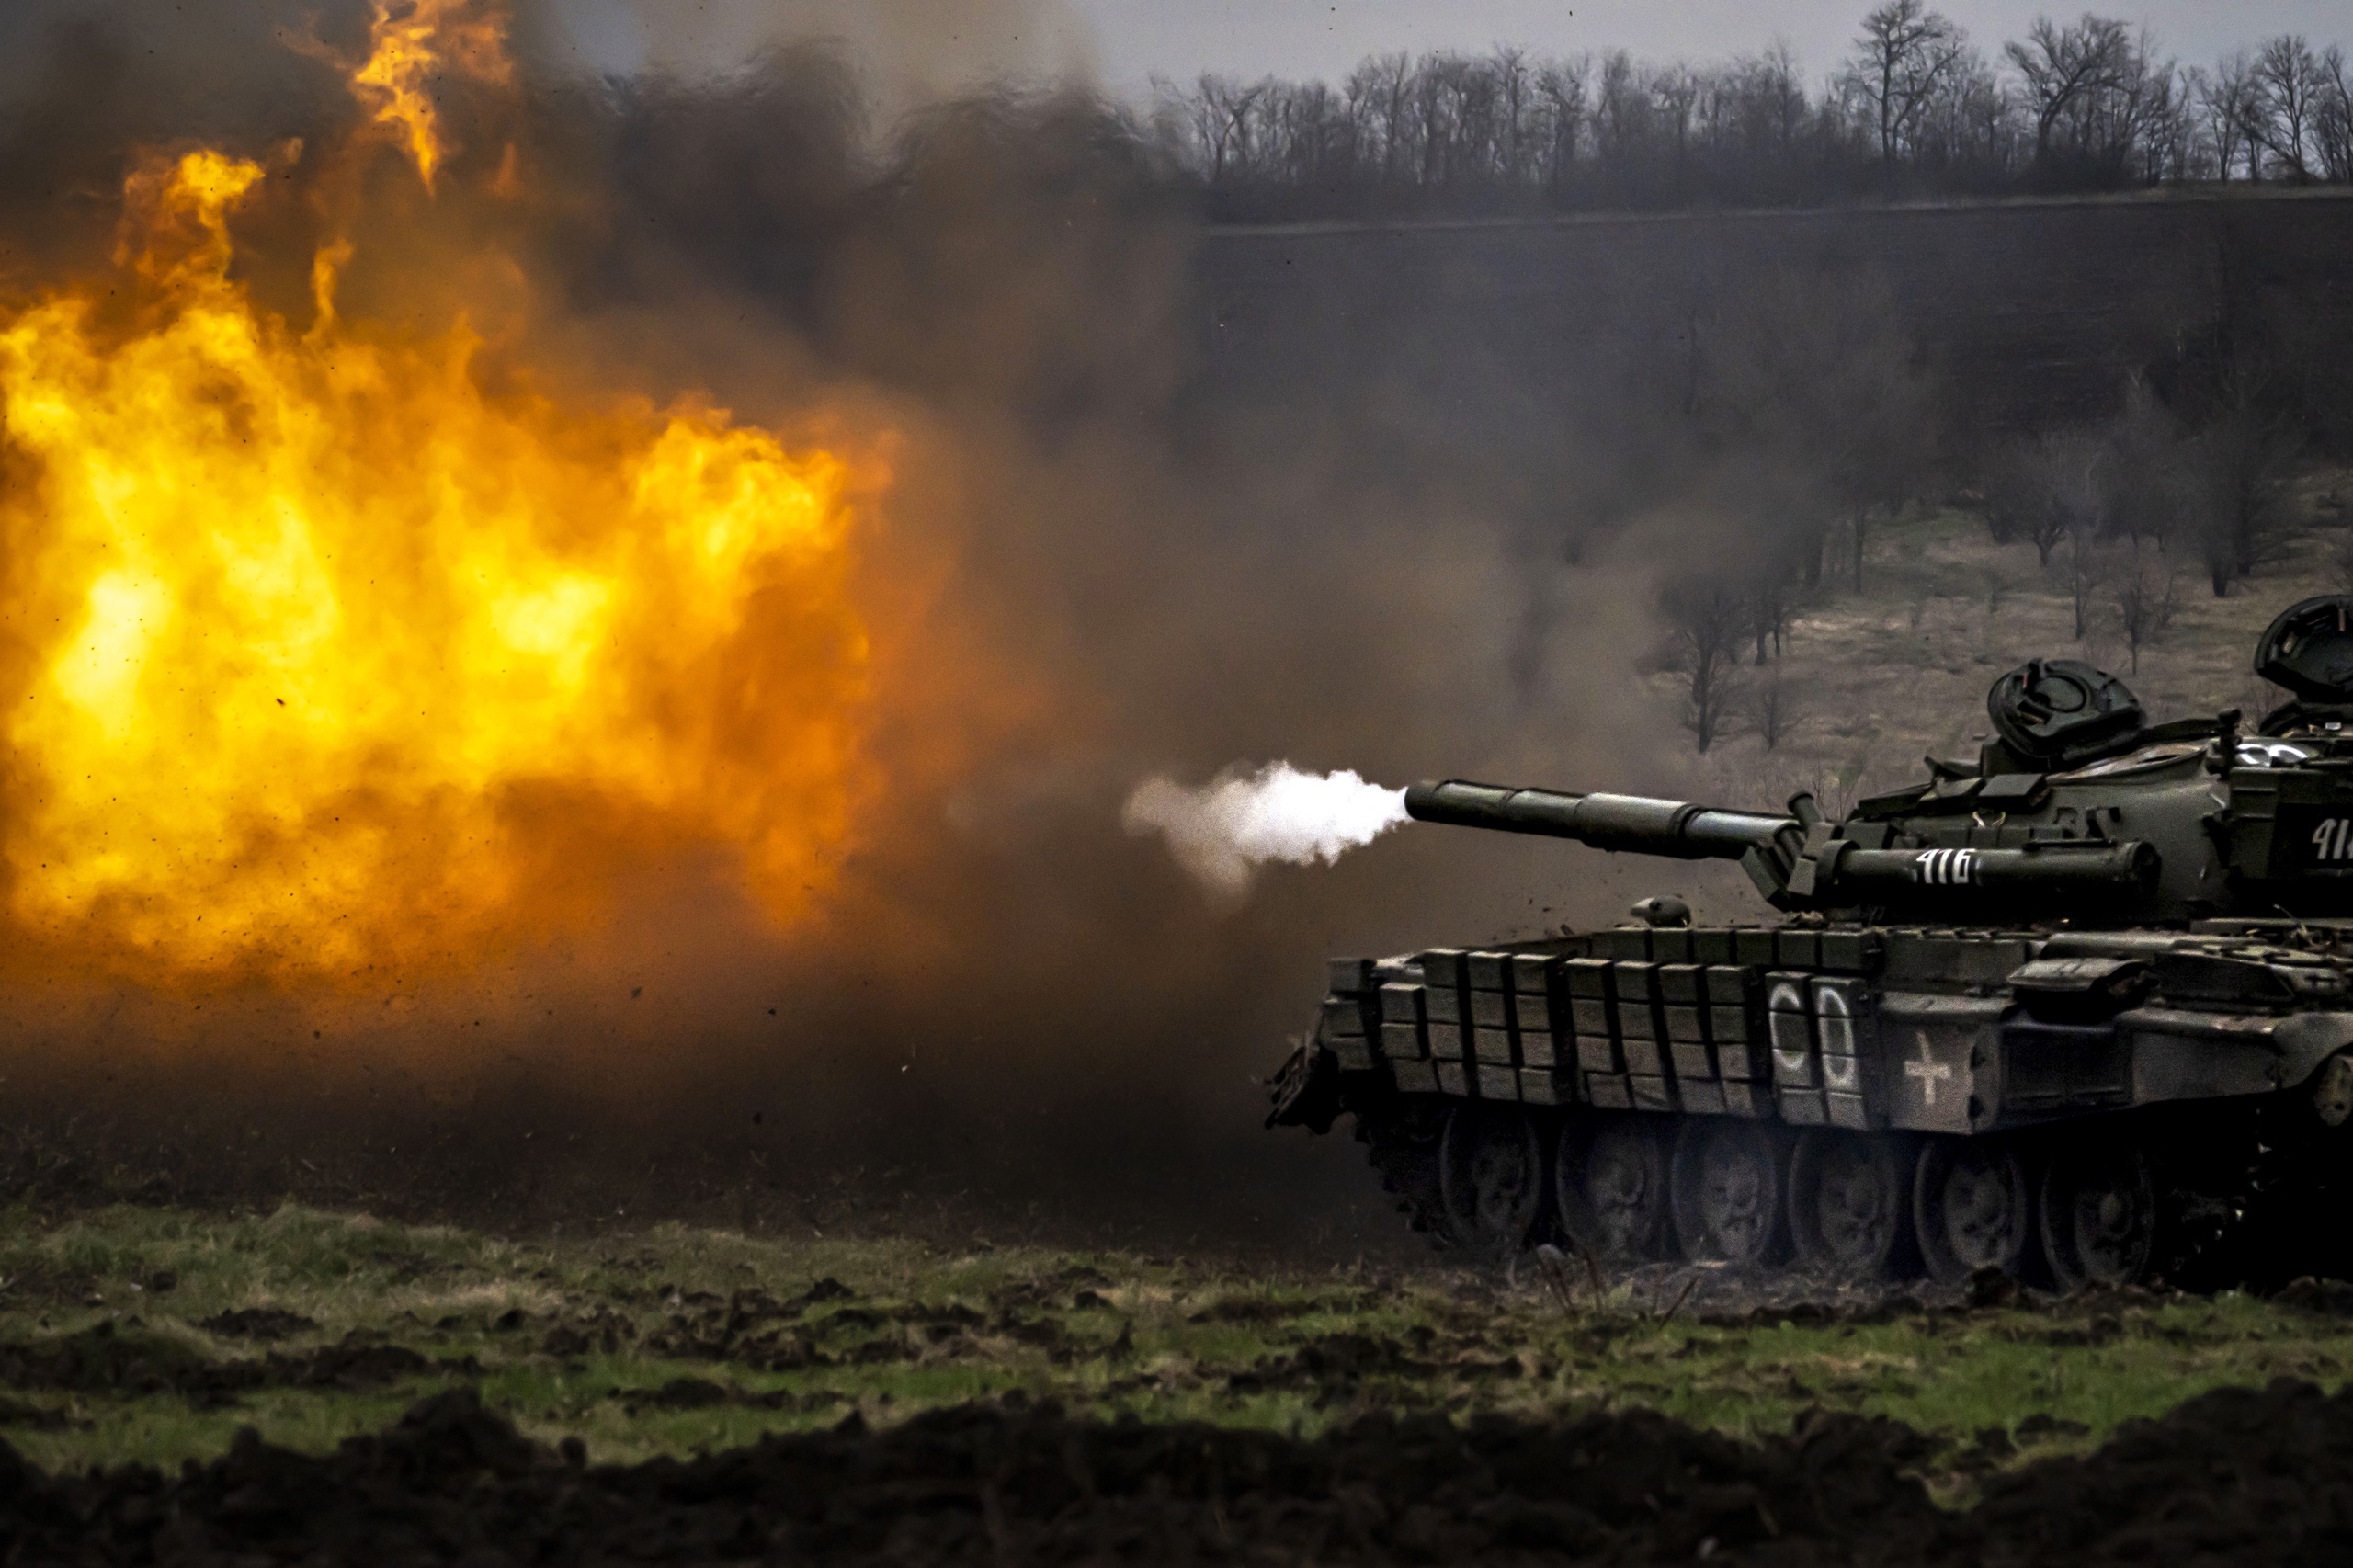 Samen met Denemarken gaat Nederland veertien Leopard 2-tanks aan Oekraïne leveren. Volgens defensiespecialist Dick Zandee van instituut Clingendael zijn de tanks nodig omdat Oekraïne 'dit jaar een grote aanval wil uitvoeren'. Zandee stelt dat daarvoor 'een concentratie van gevechtskracht' nodig is. 'Waarbij de tank een heel essentieel onderdeel is, vanwege zijn mobiliteit en vuurkracht.'